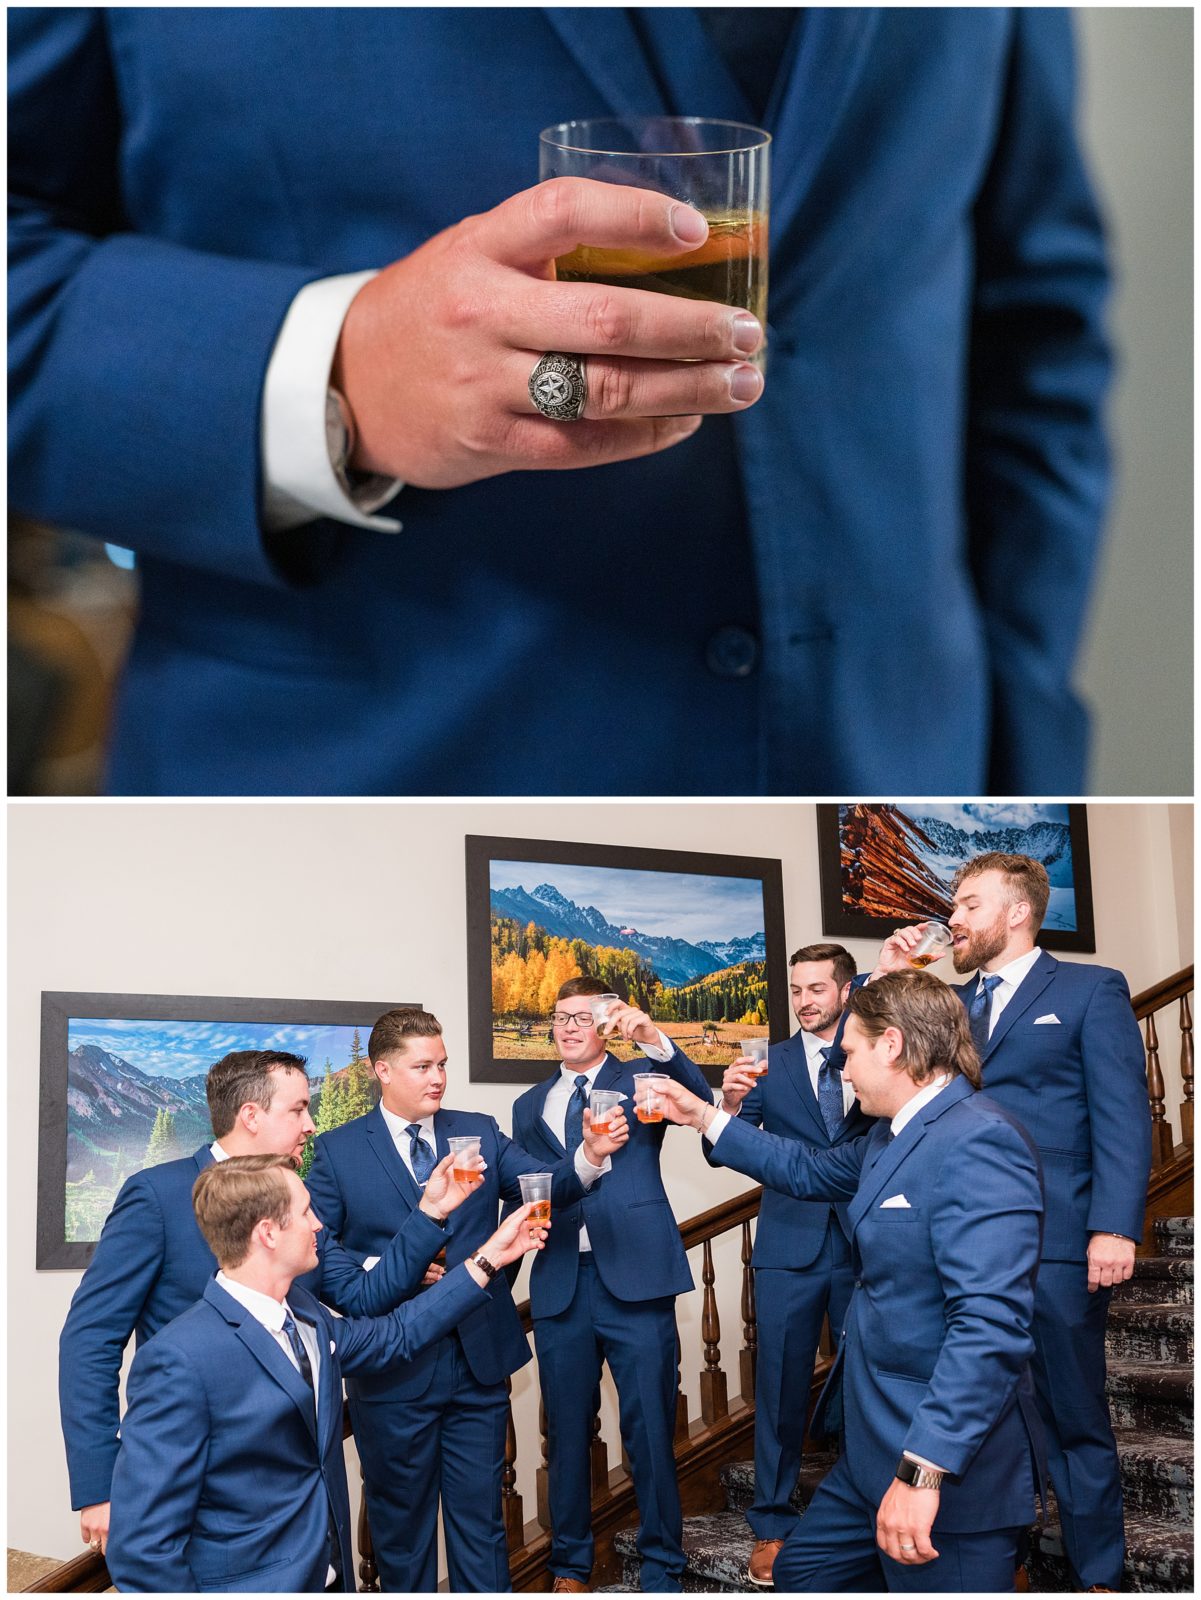 Groom Prep at The Lodge at vail wedding